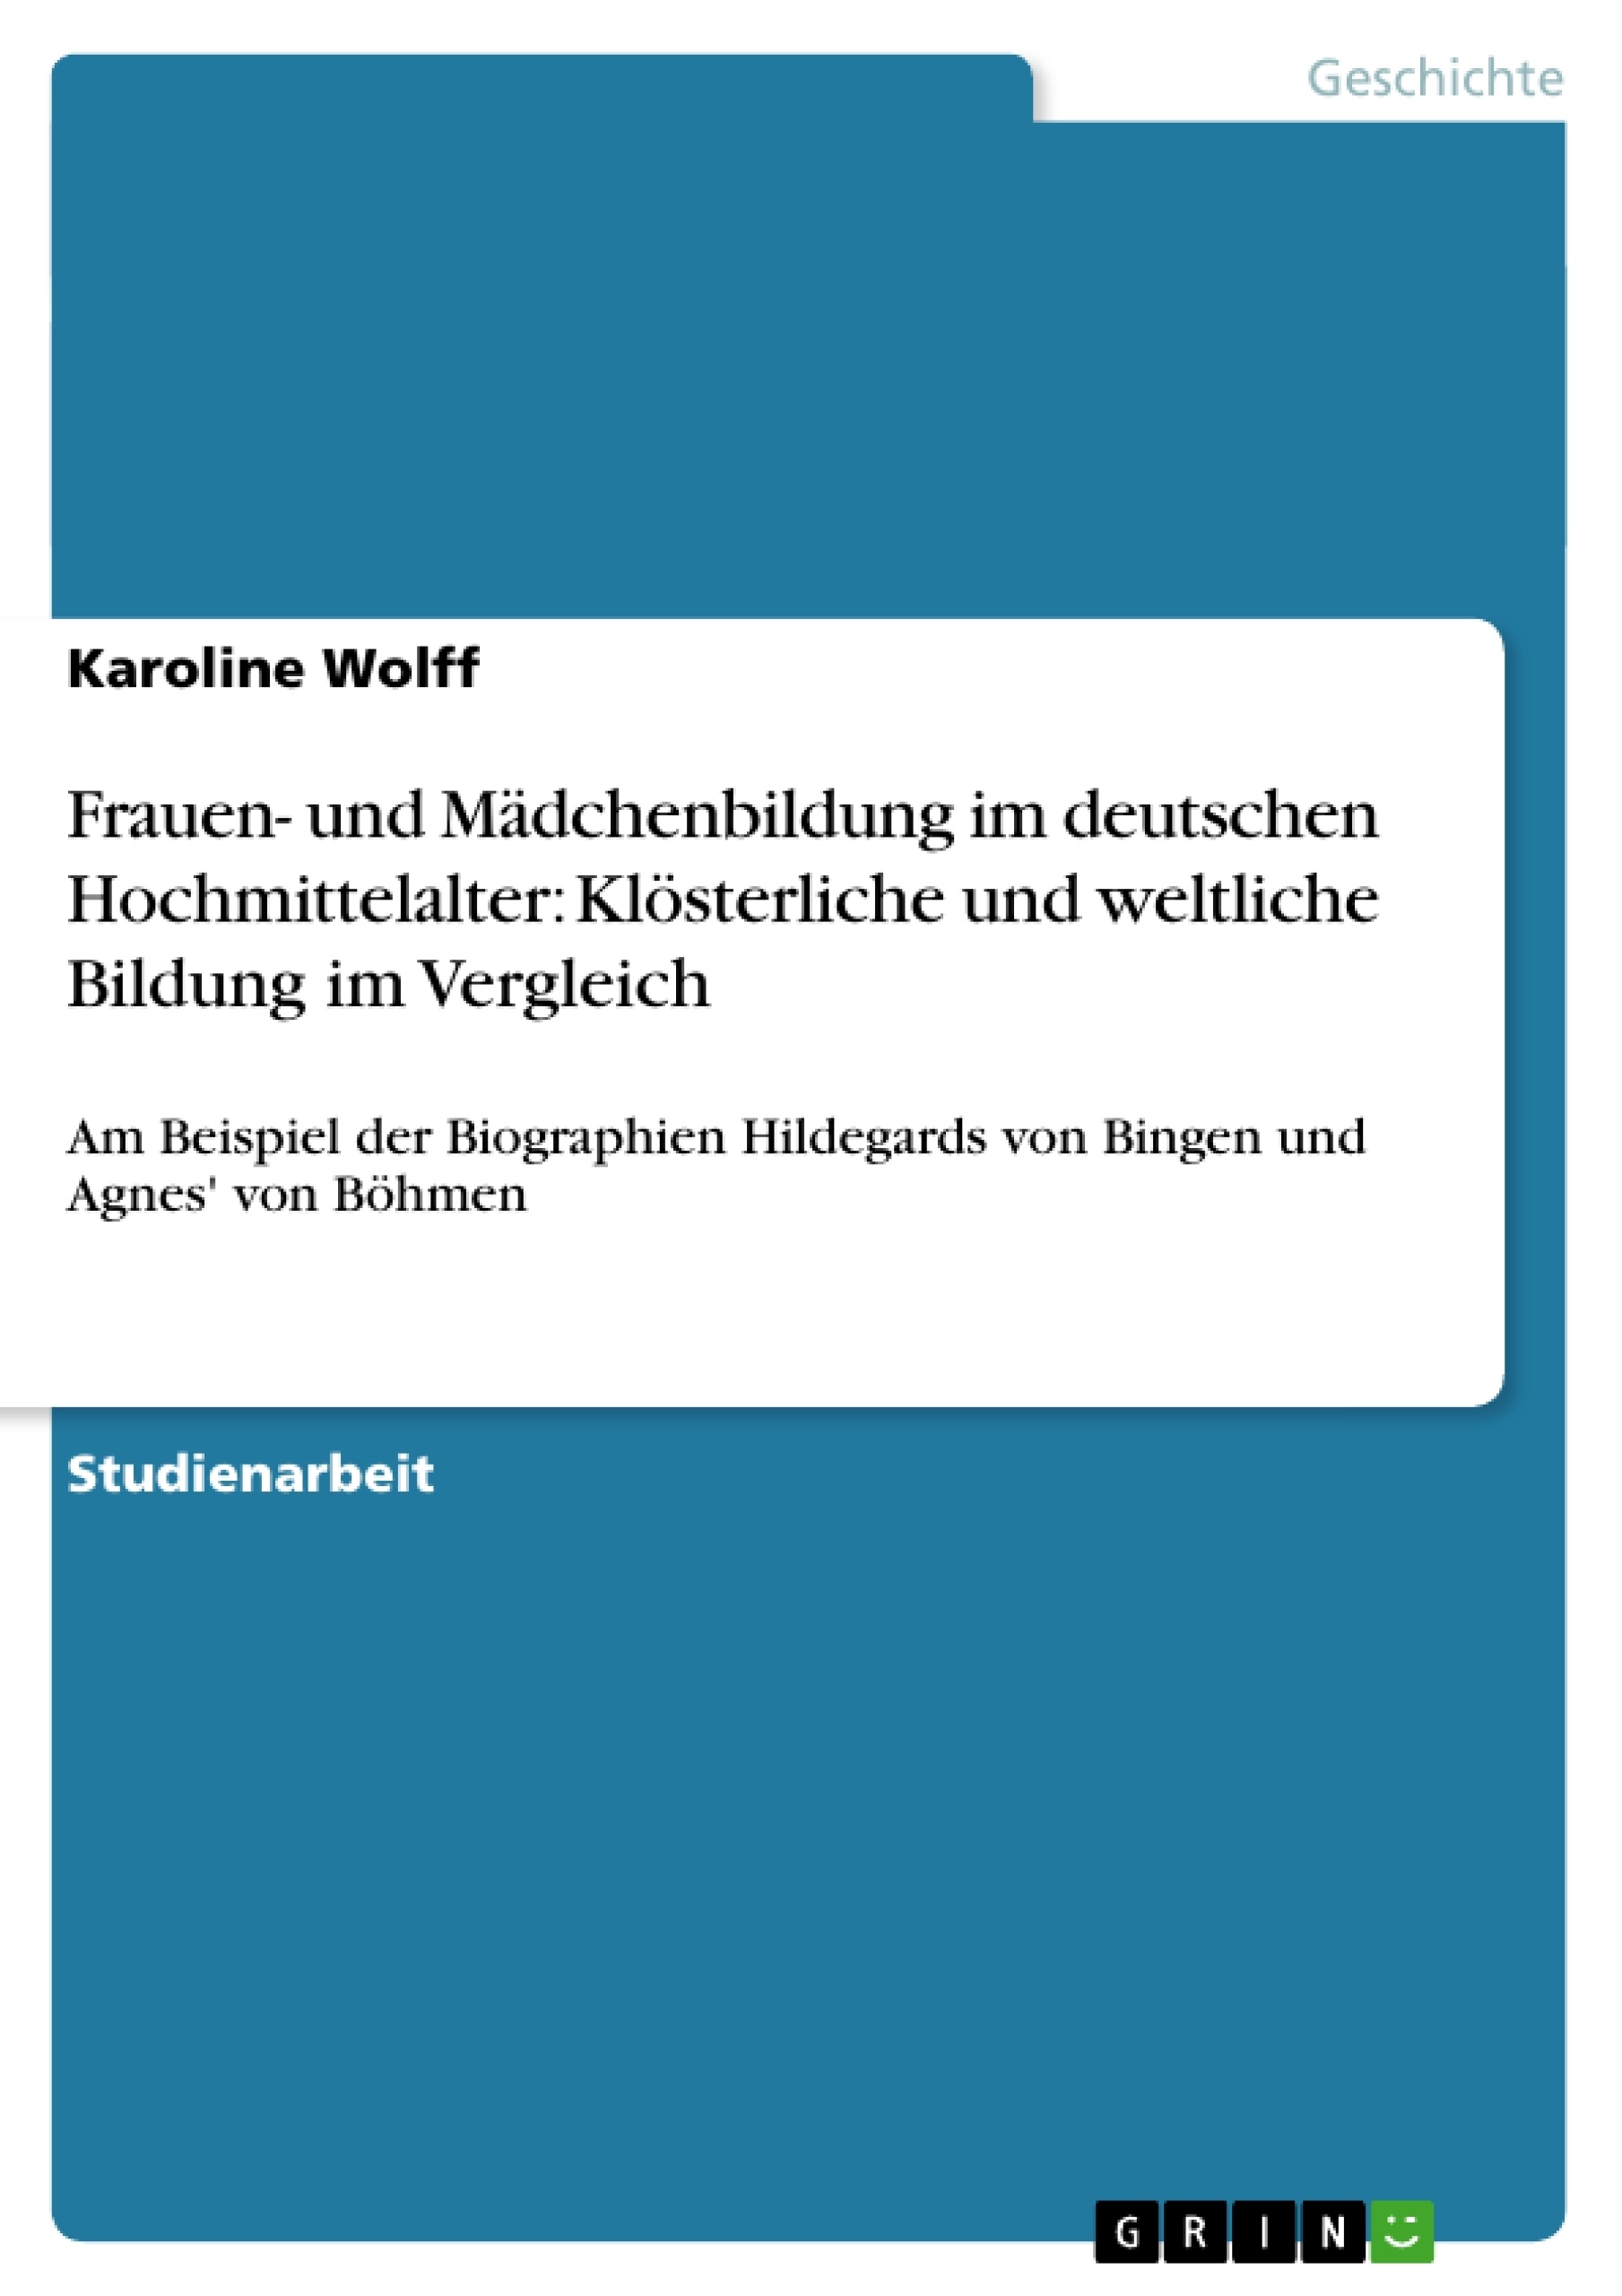 Title: Frauen- und Mädchenbildung im deutschen Hochmittelalter: Klösterliche und weltliche Bildung im Vergleich